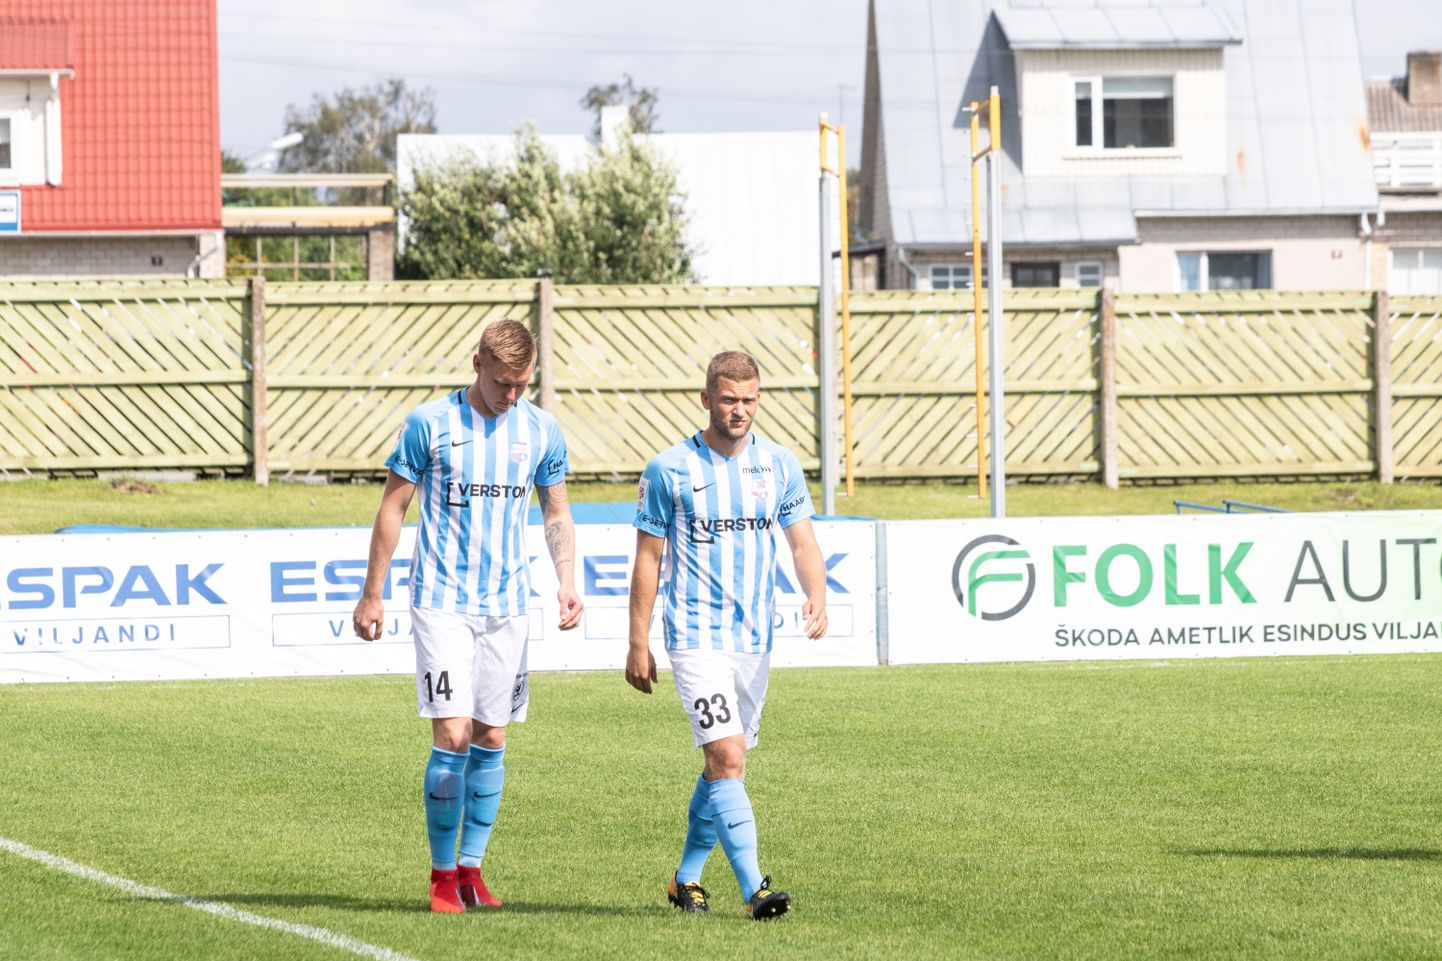 Pühapäeval olid jalgpalli Premium liigas vastamisi Viljandi Tulevik ja Paide Linnameeskond.